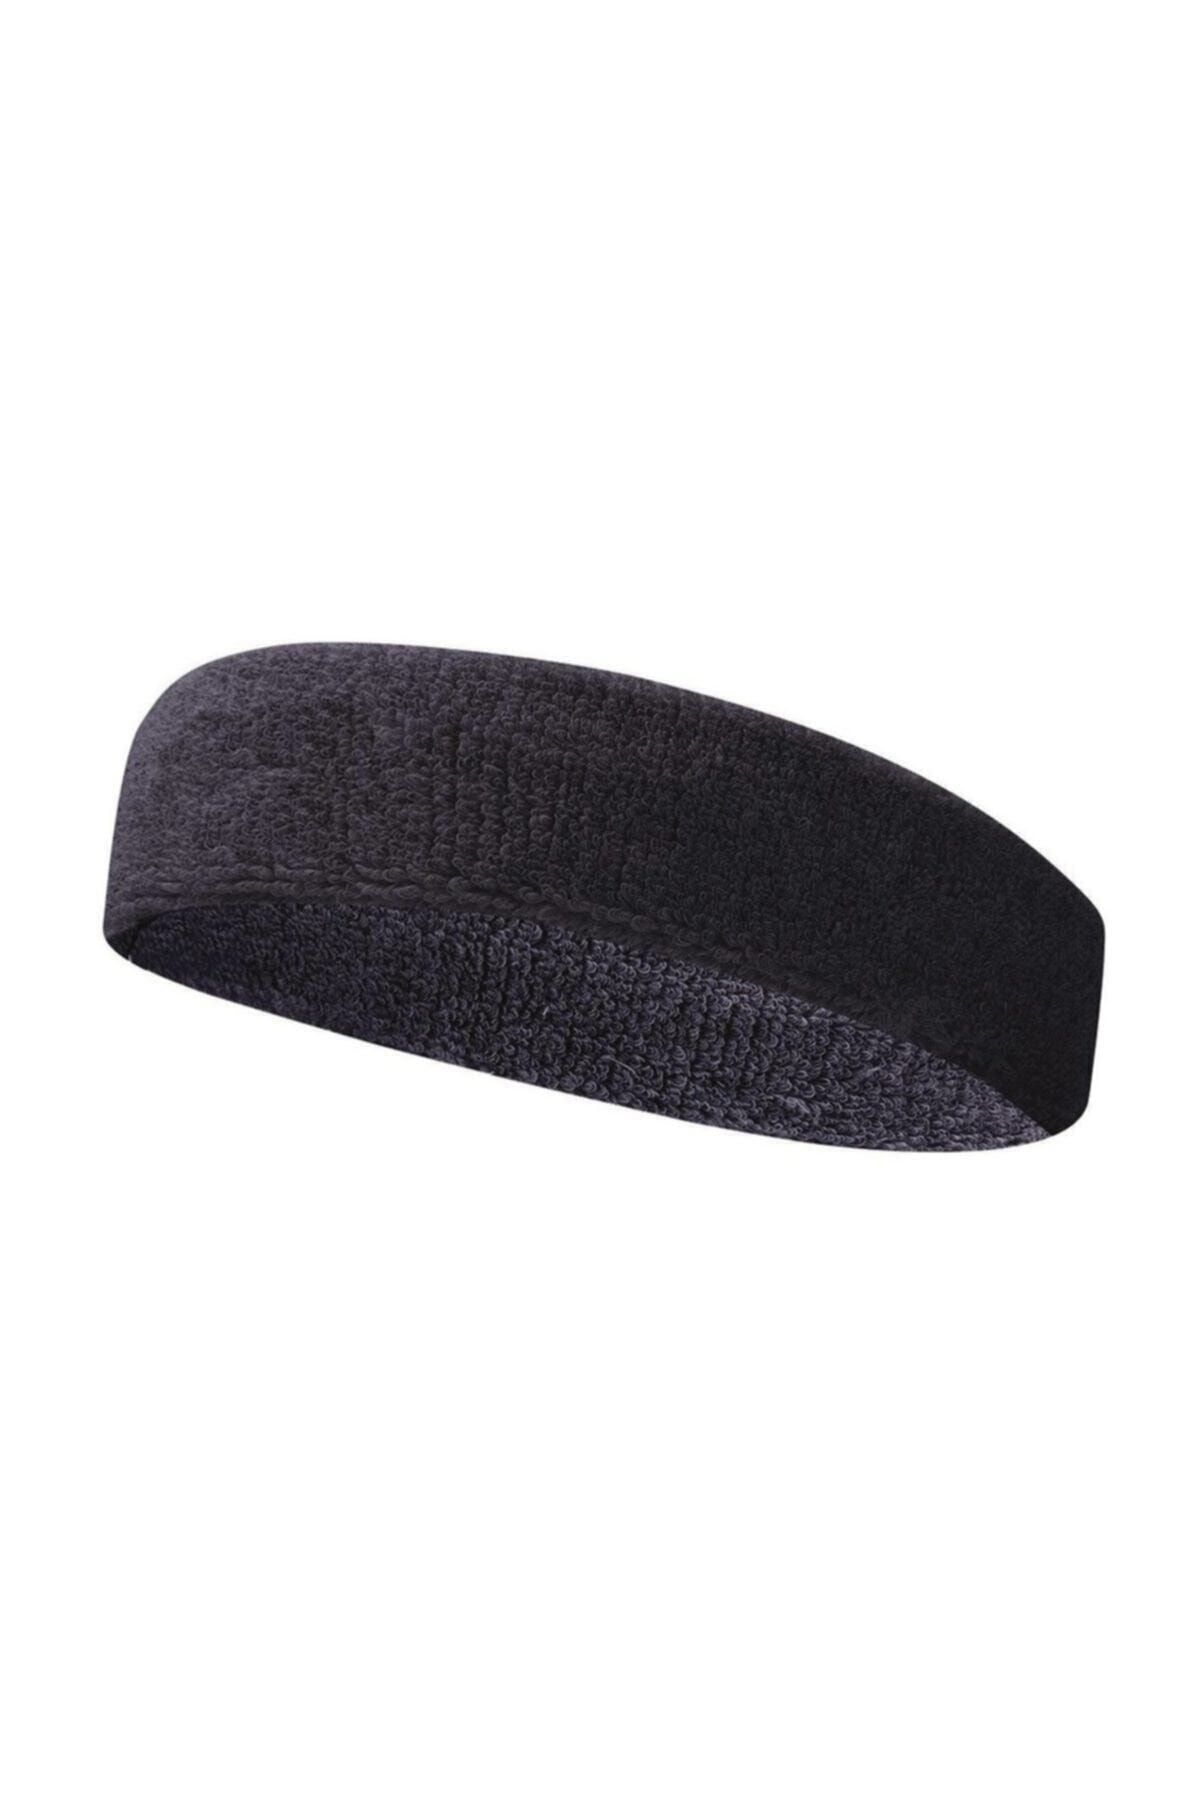 Yukon Havlu Ter Bandı Kafa Bandı Headband Tenis Saç Bandı-siyah